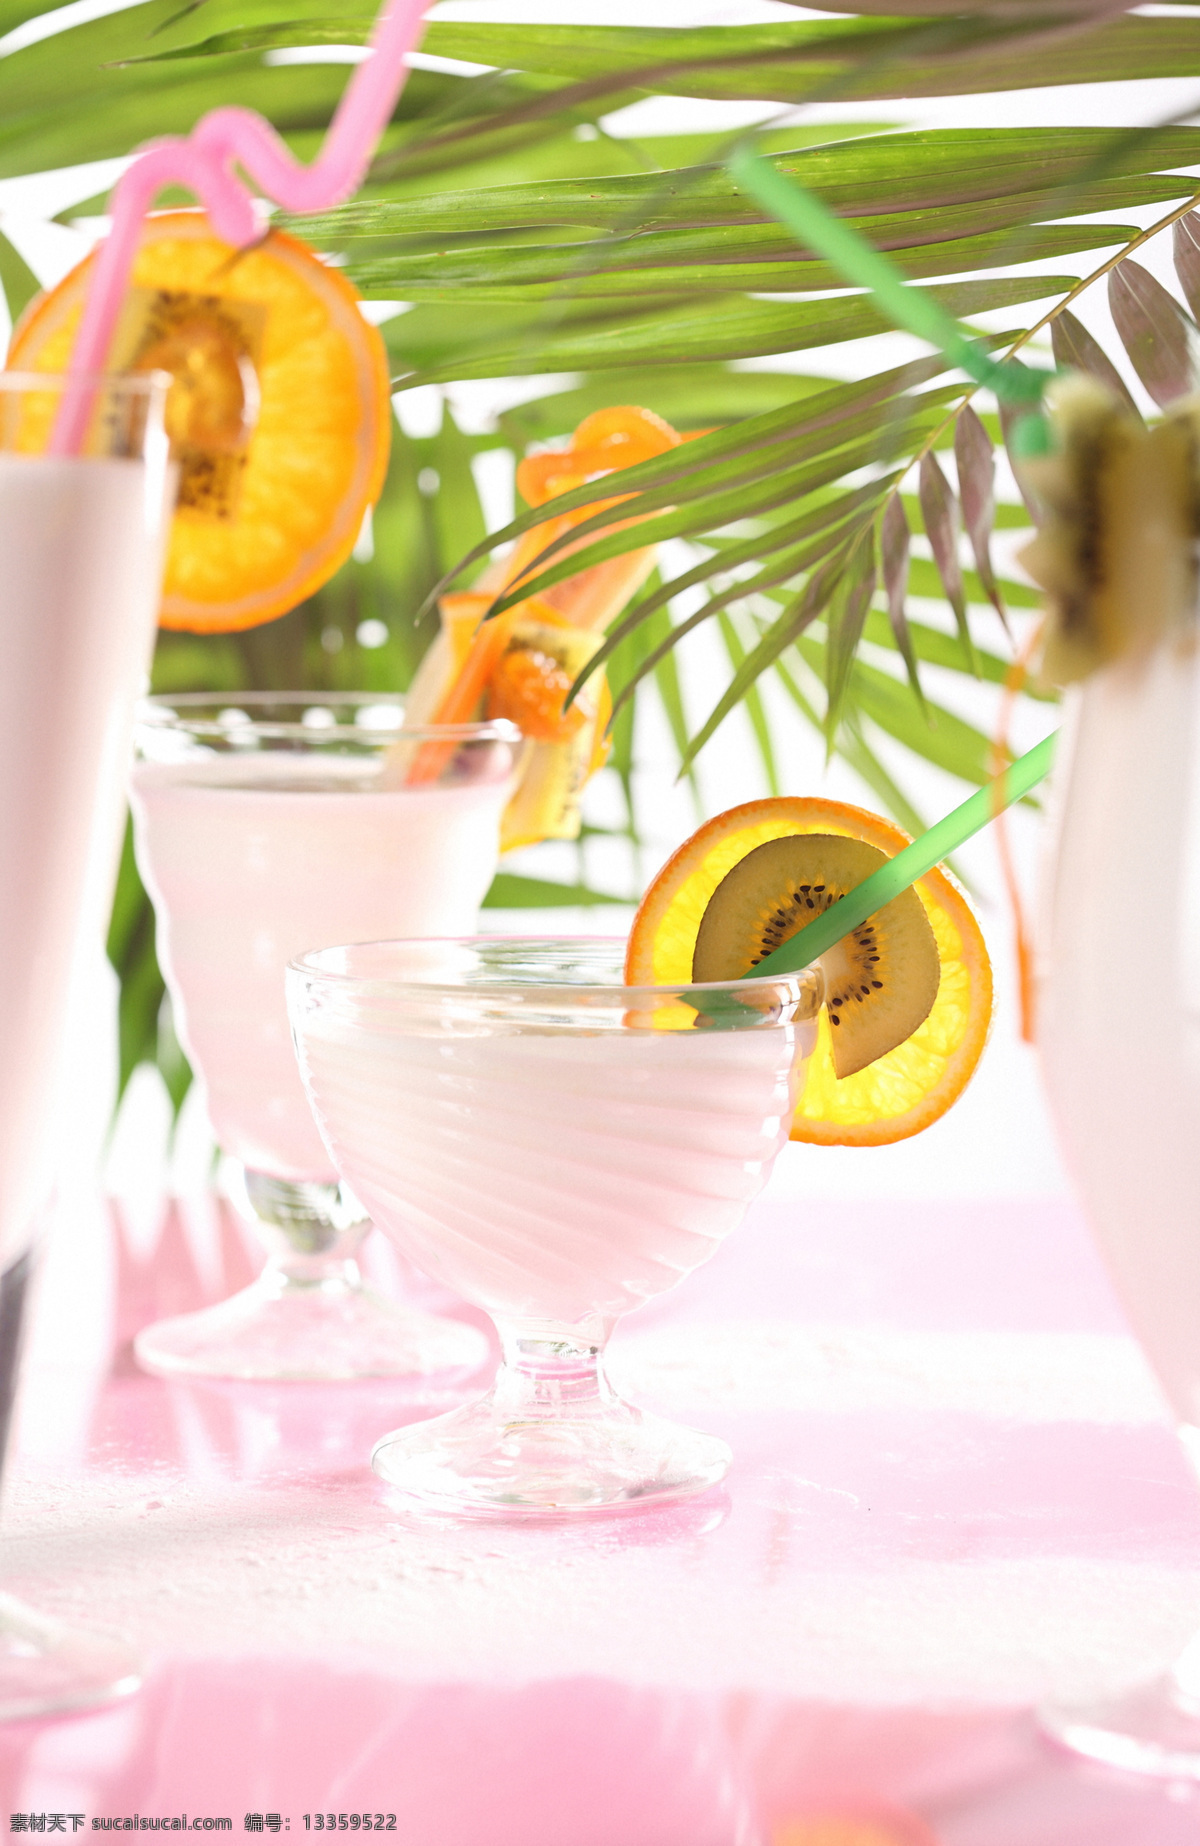 柠檬 片 牛奶 饮料 水果果汁 水果 杯子 玻璃杯子 果蔬 休闲饮品 健康食品 酒水饮料 饮料图片 餐饮美食